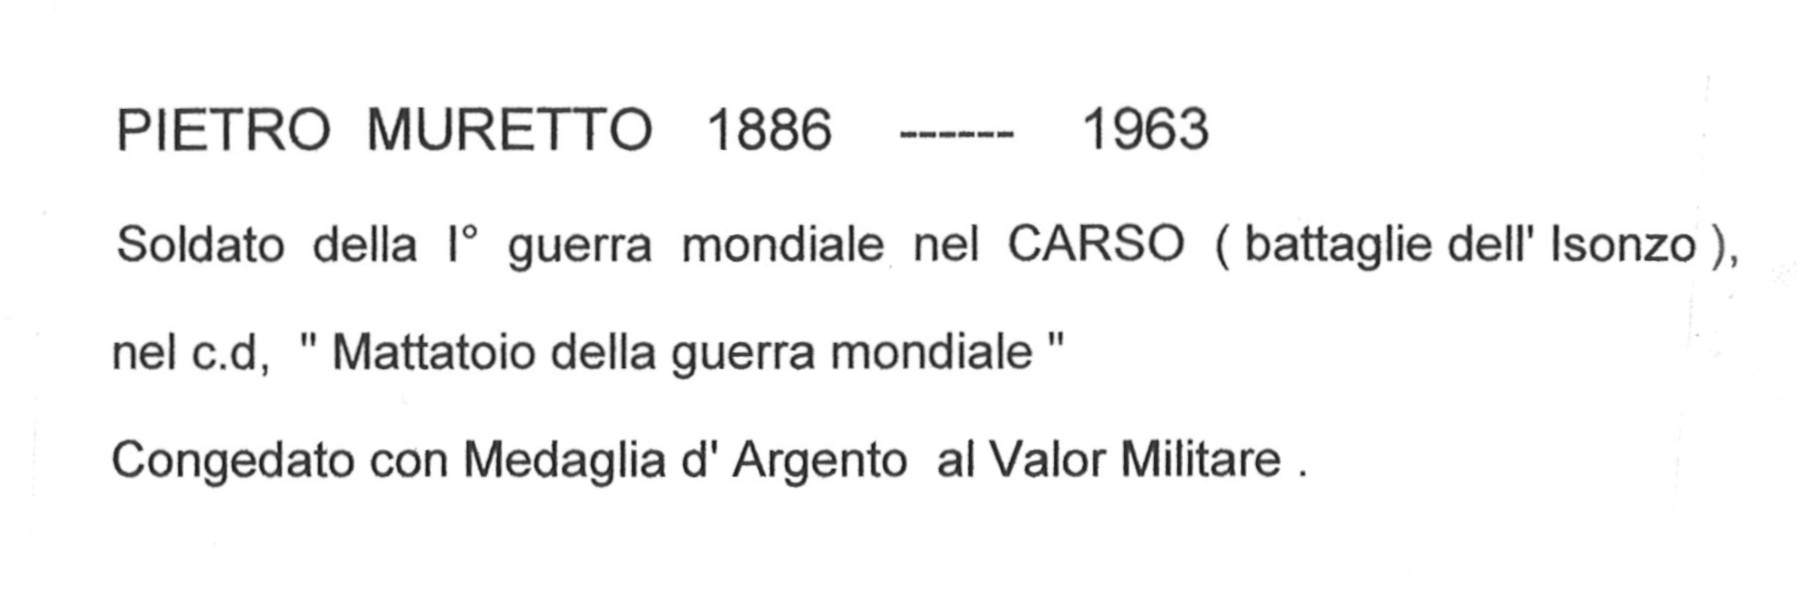 Pietro Muretto 1886-1963 soldato della 1^ Guerra Mondiale nel Carso con le Battaglie dell’Isonzo nel cosiddetto “Mattatoio della Guerra Mondiale” e congedato con Medaglia d’Argento al Valor Militare.